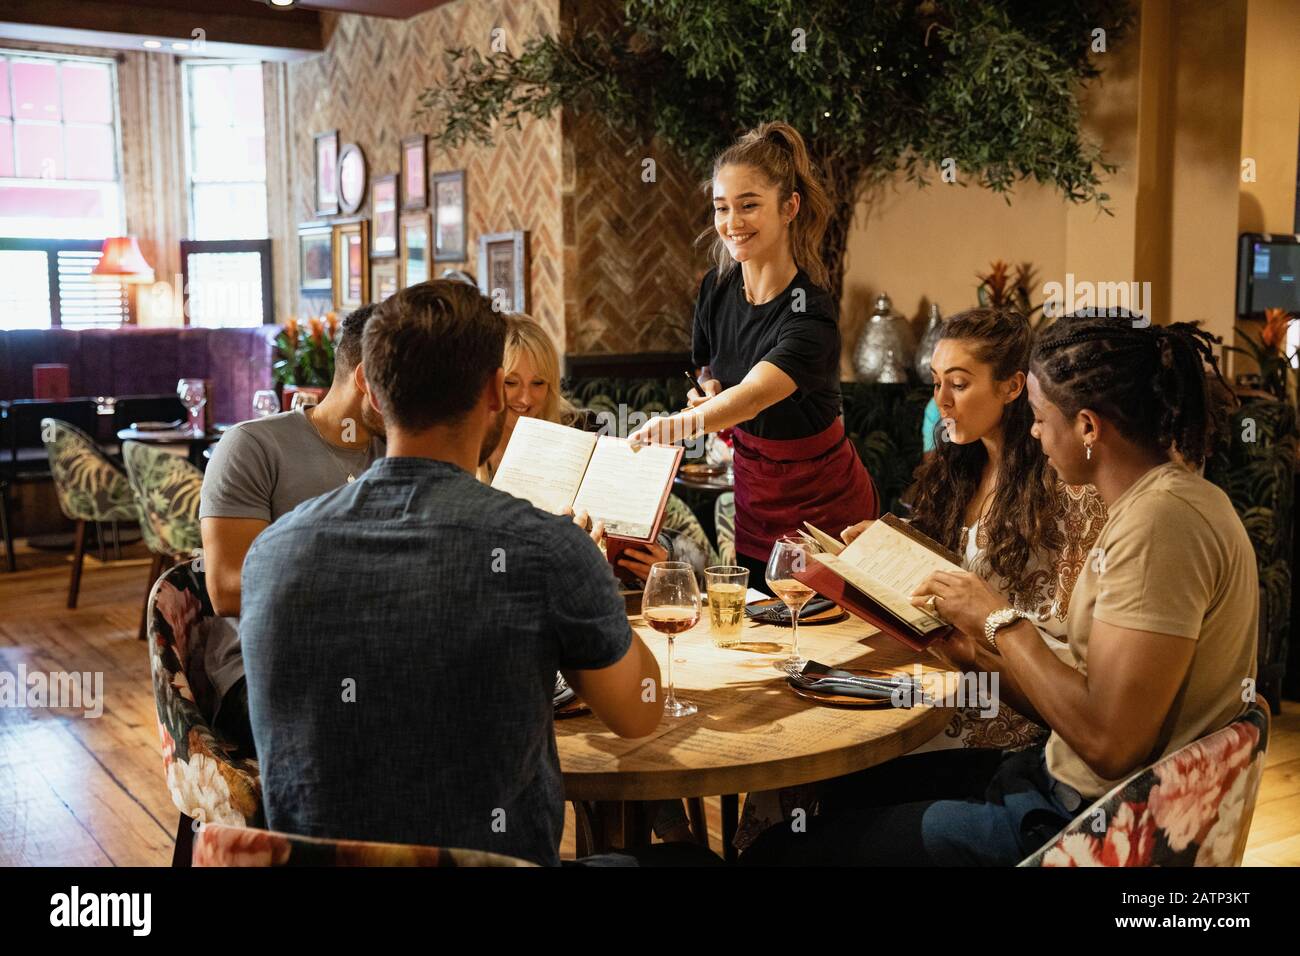 Un grupo multiétnico de amigos que miran los menús juntos en un restaurante, que les ha sido dado por una camarera. Foto de stock